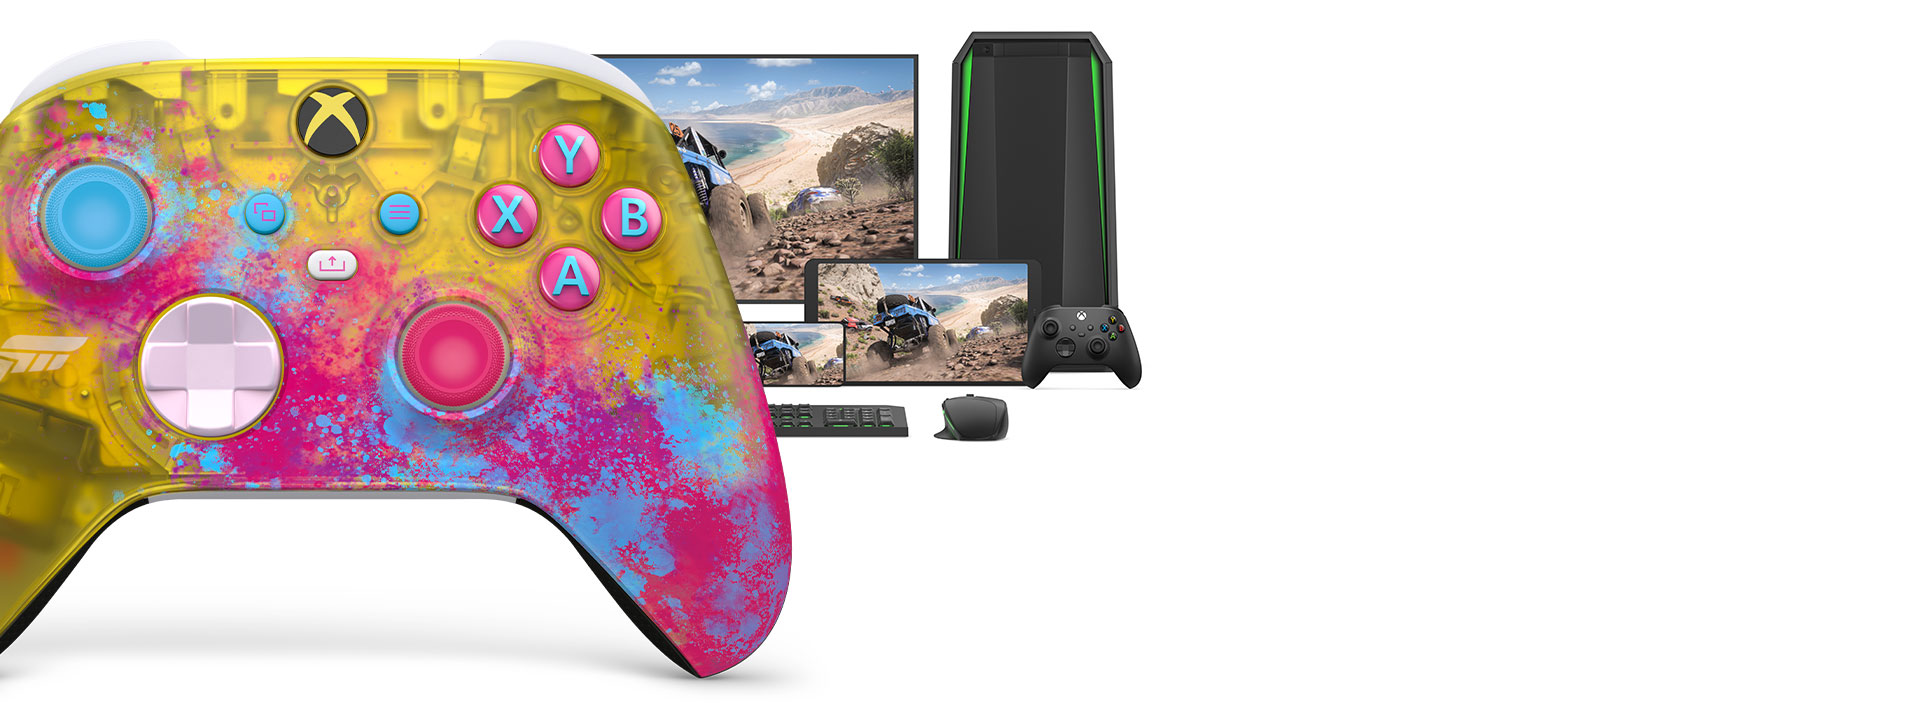 Controller Wireless per Xbox Forza Horizon 5 con un computer, un TV e una console Xbox Series S